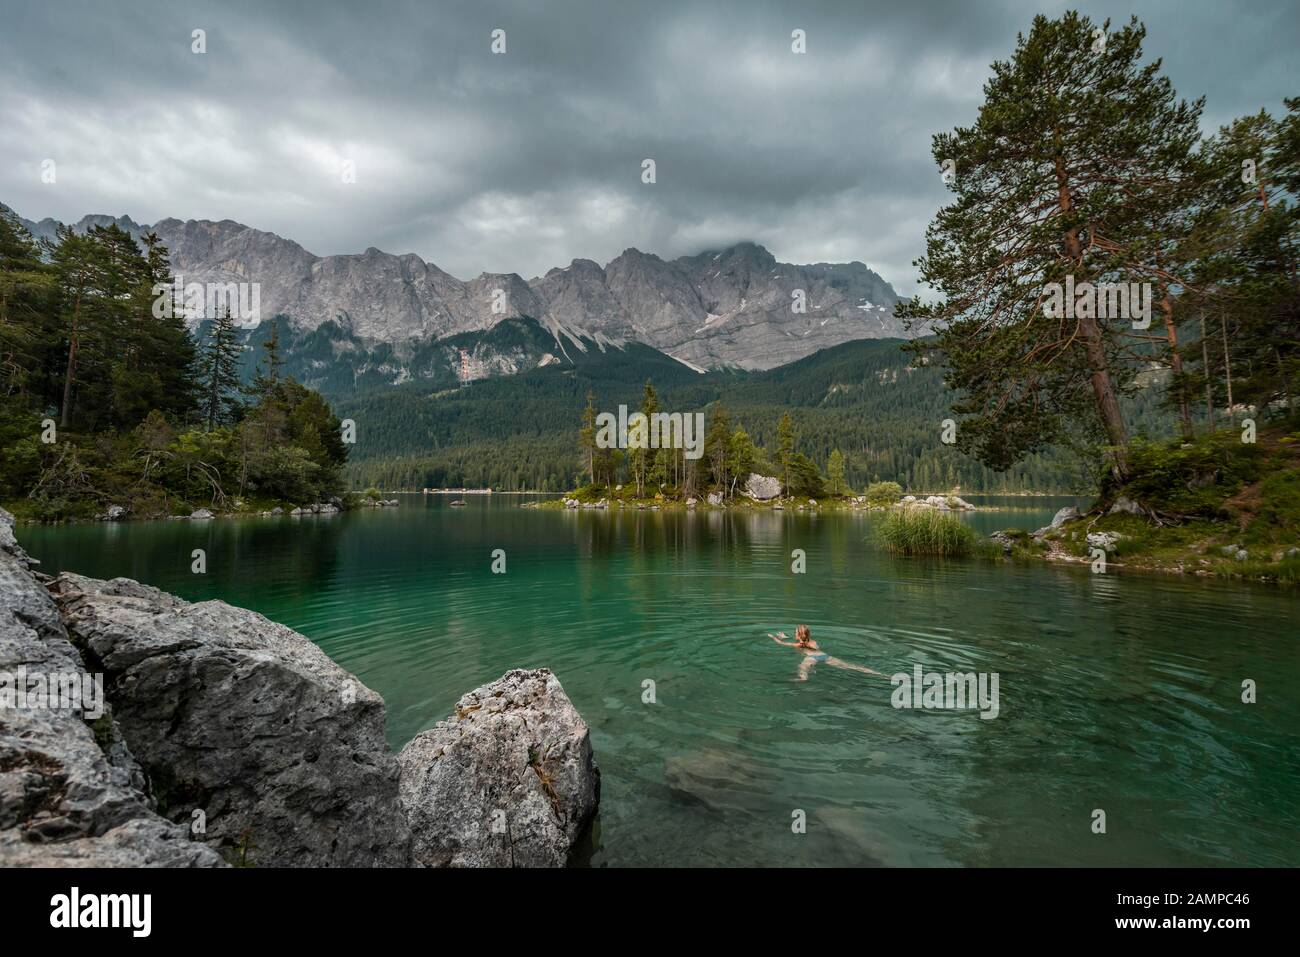 Frau schwimmt im See, Felsen am Ufer, Blick in die Ferne, Eibsee vor Zugspitzmassiv mit Zugspitze, Wetterstein Range Stockfoto